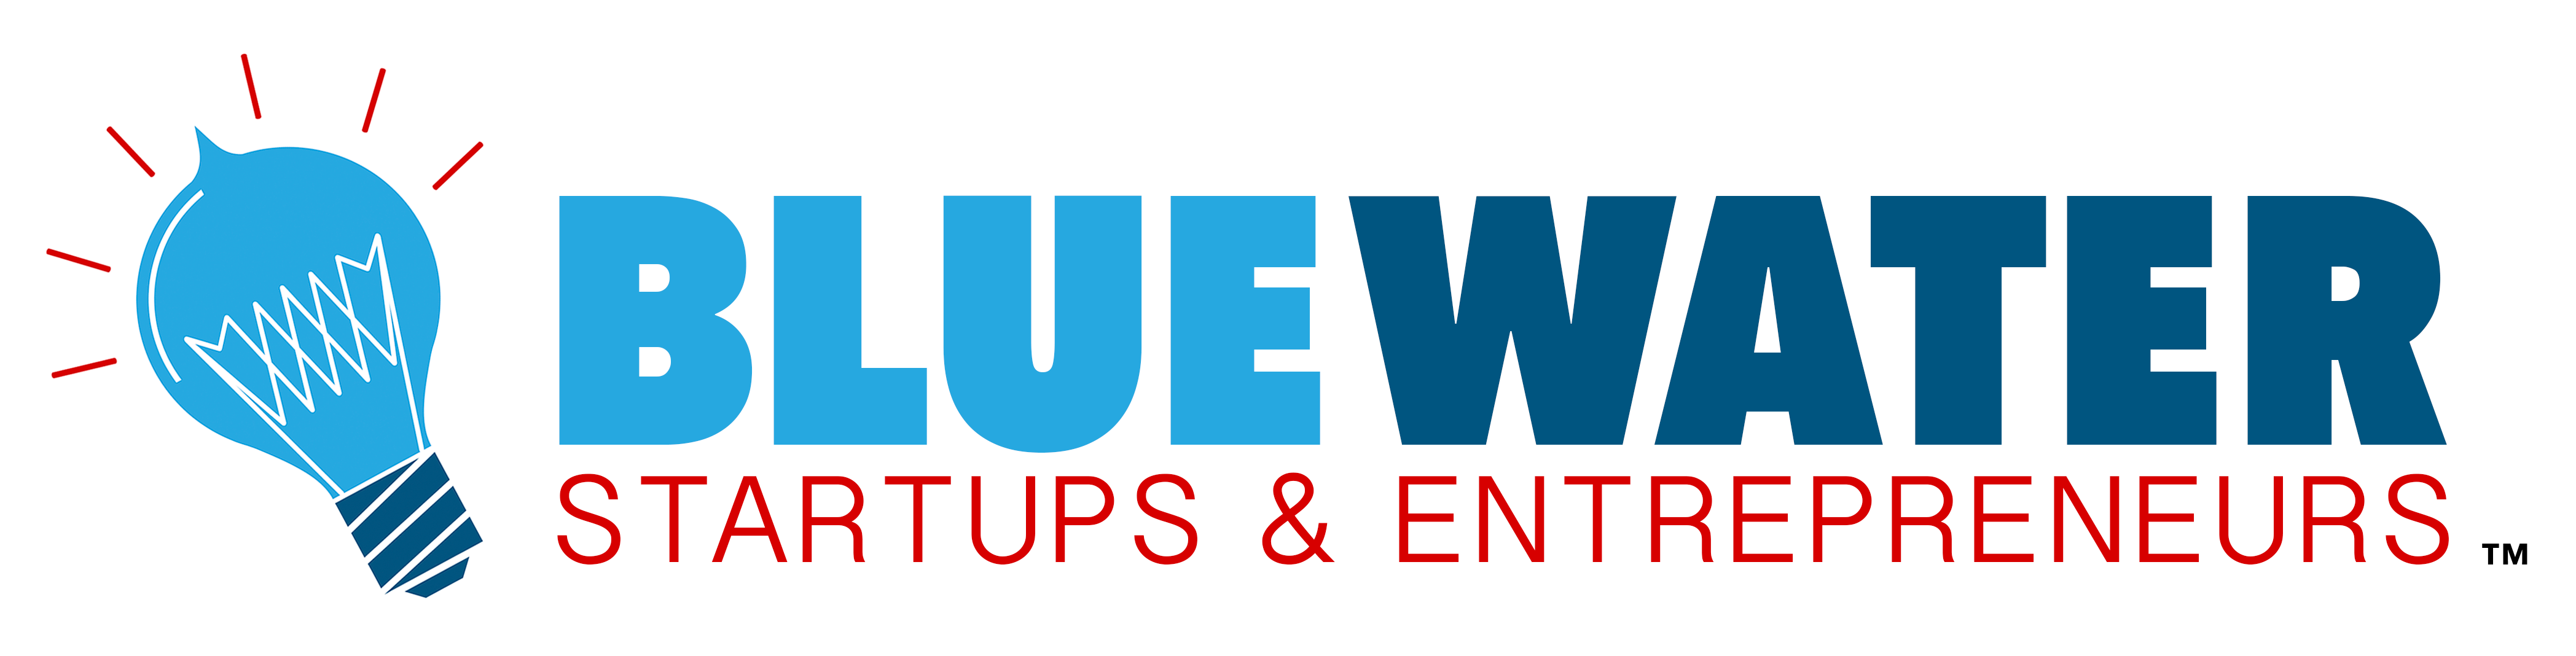 Blue Water Startups & Entrepreneurs Full Logo